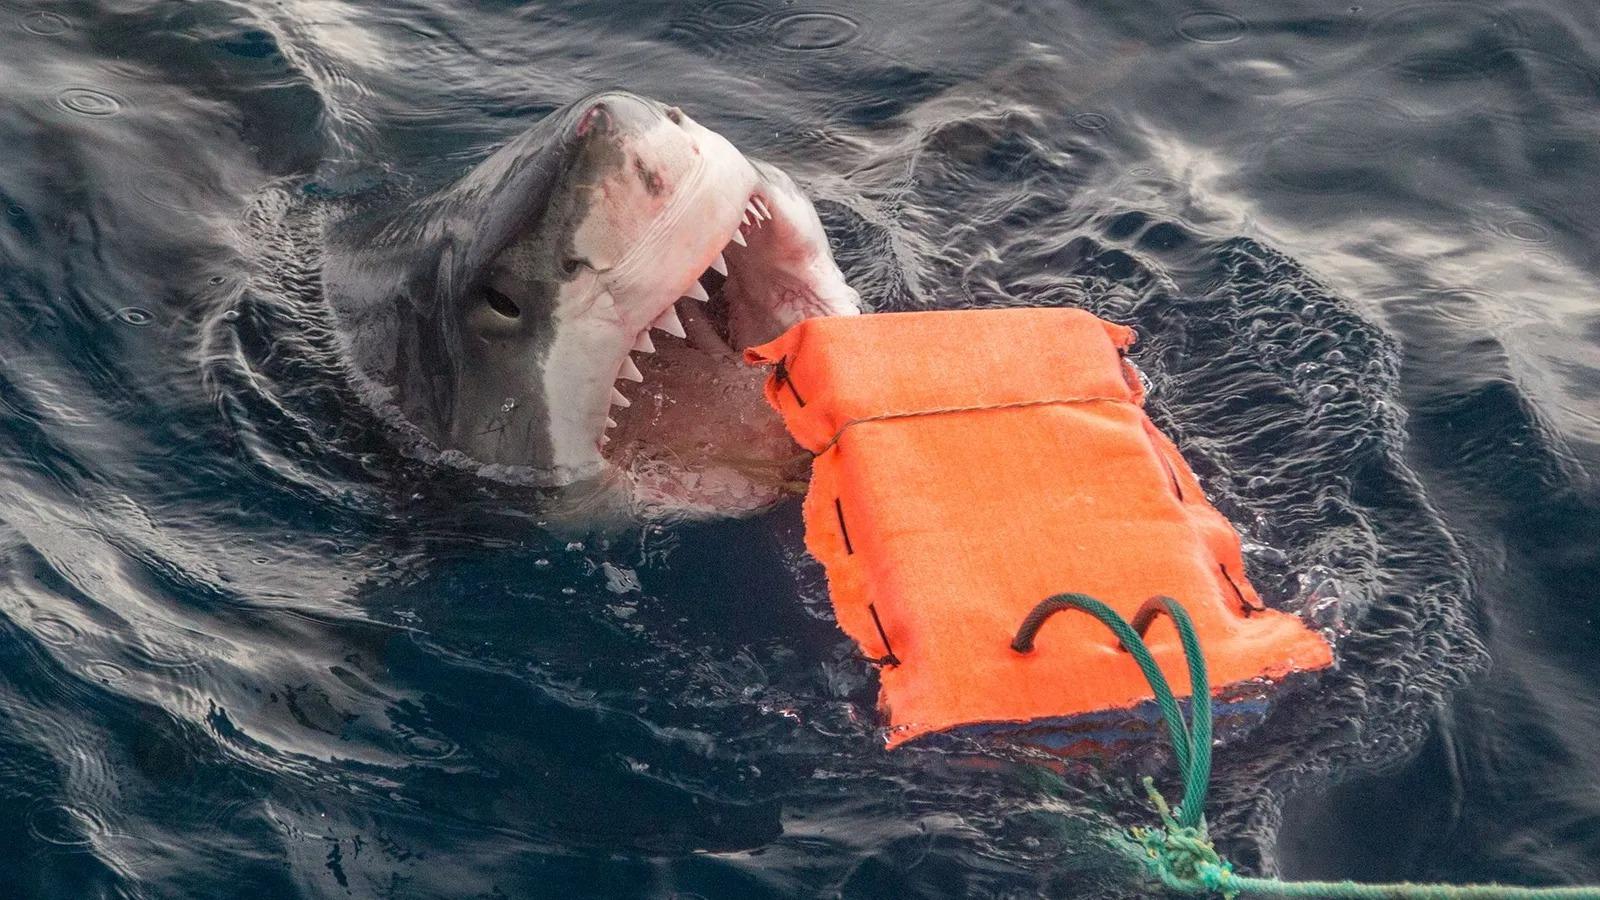 Tubarão atacando uma boia com seus dentes